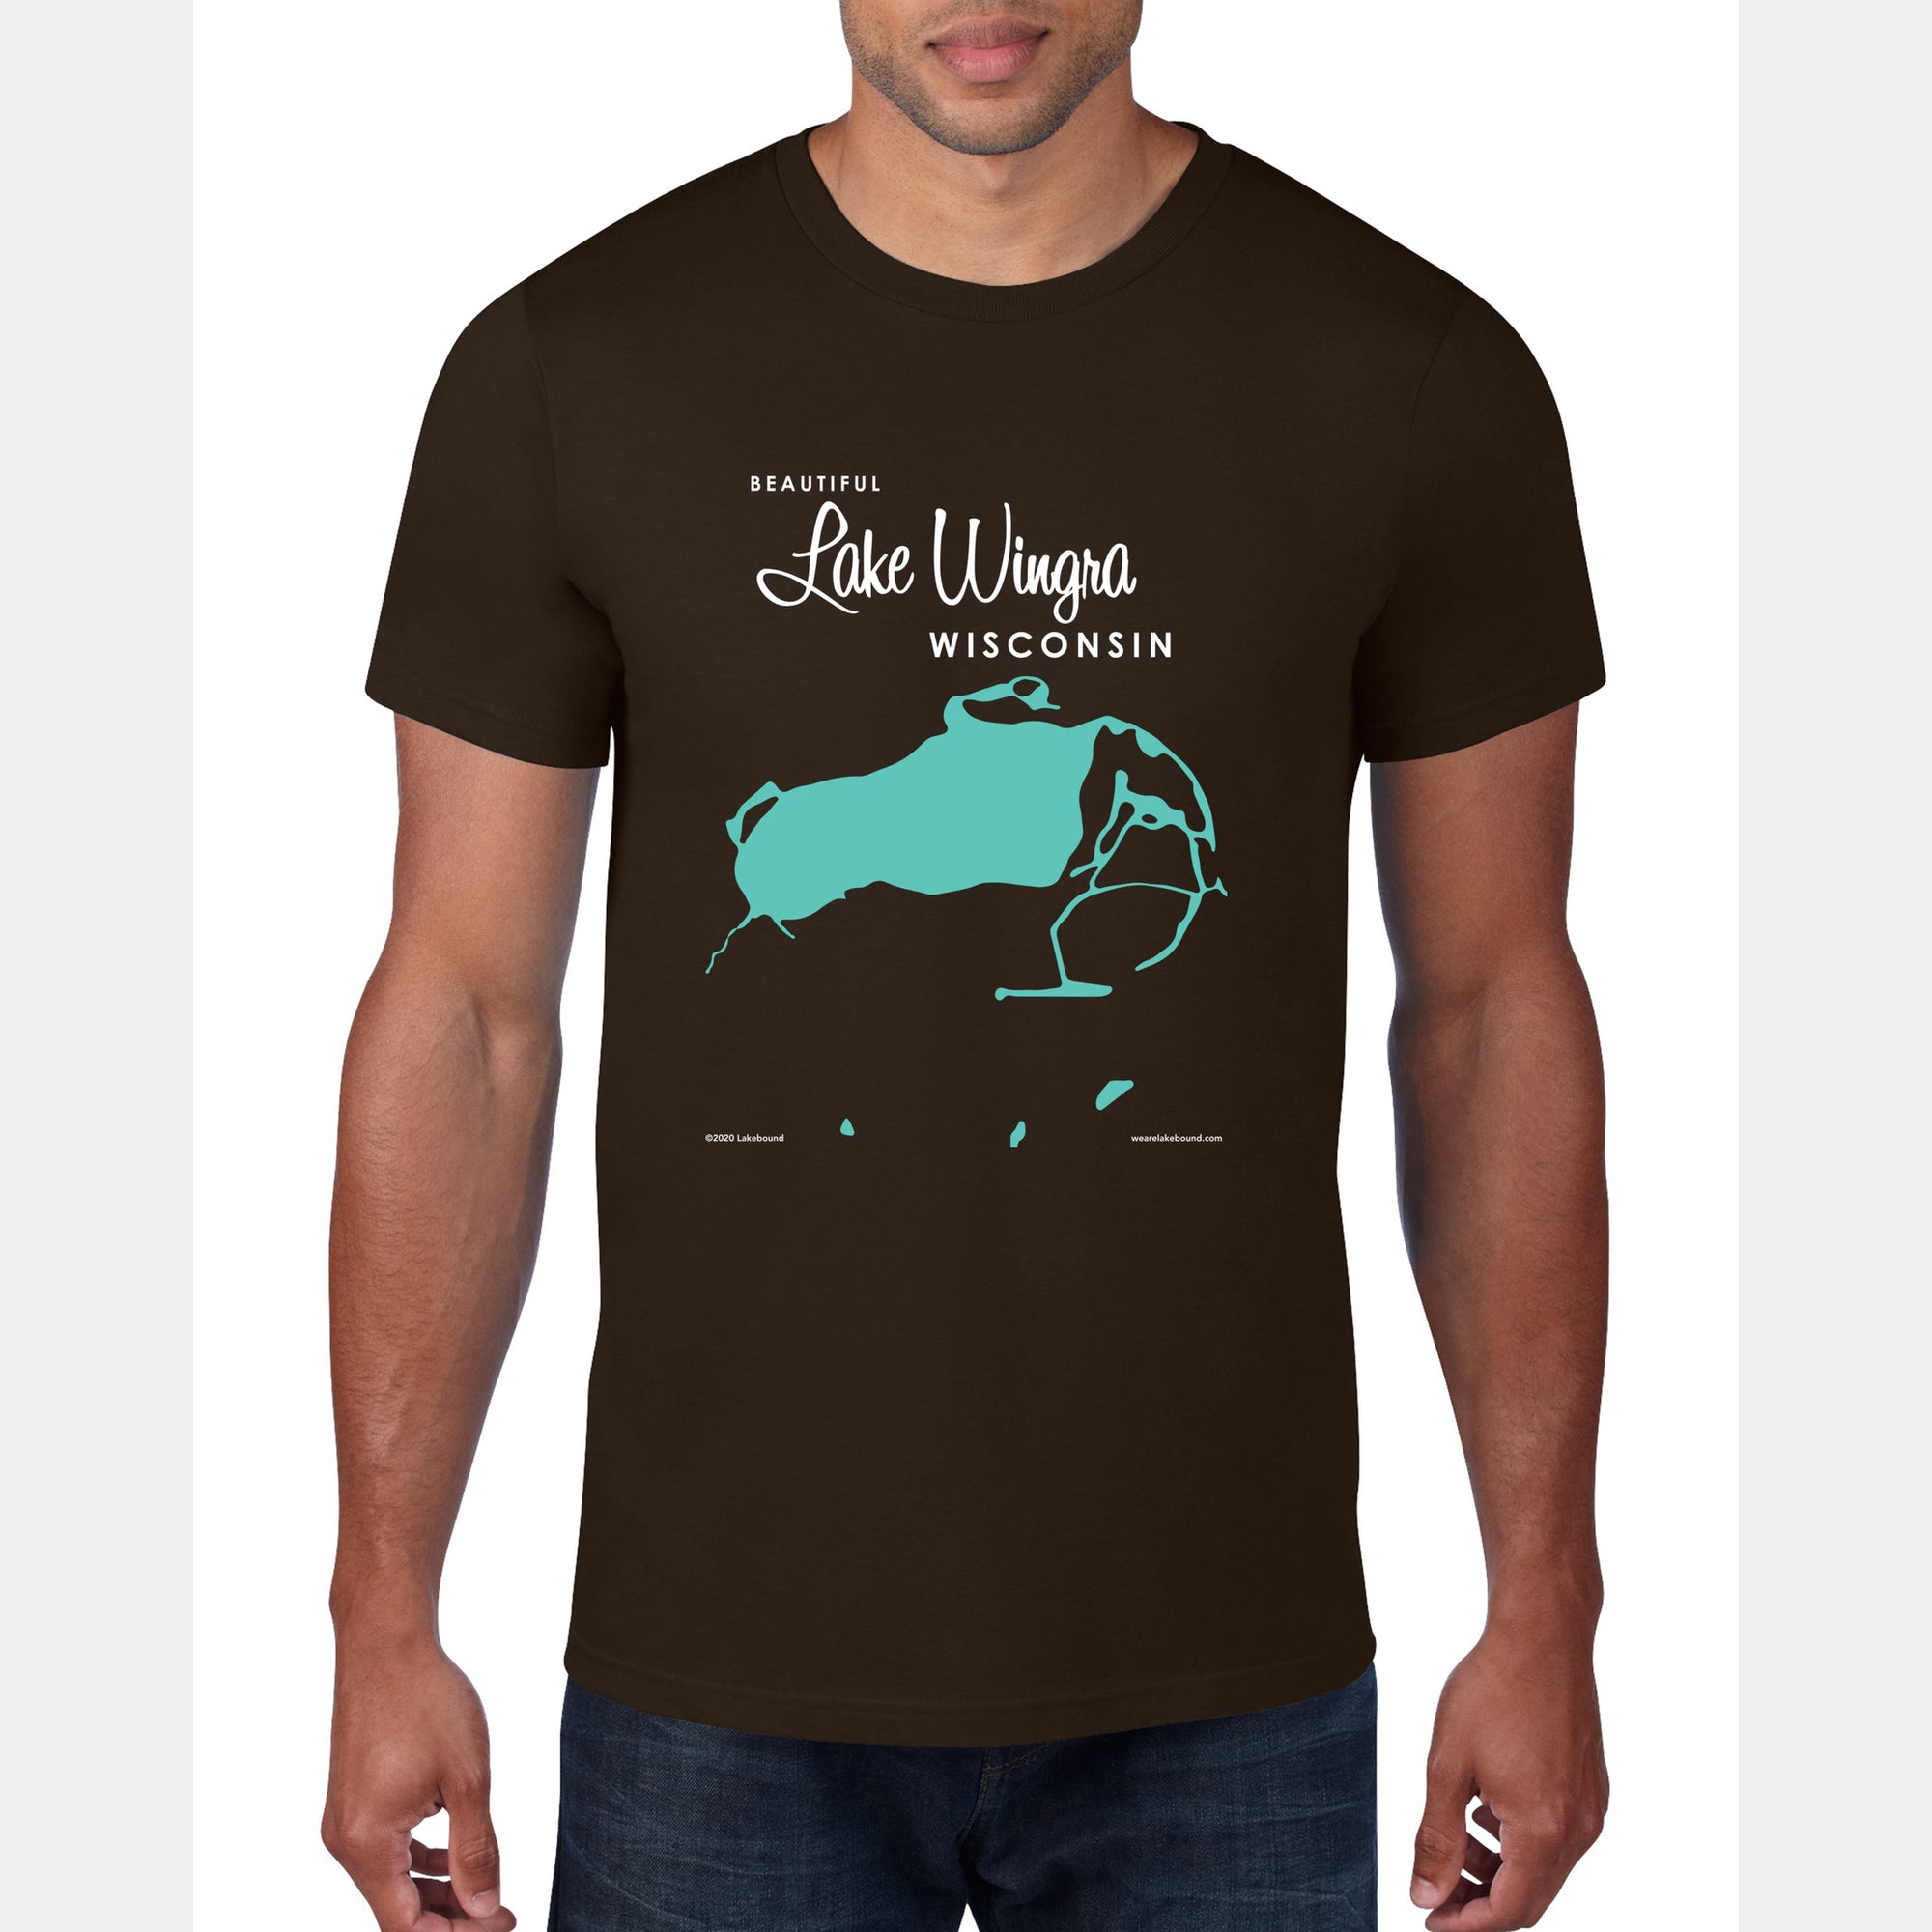 Lake Wingra Wisconsin, T-Shirt